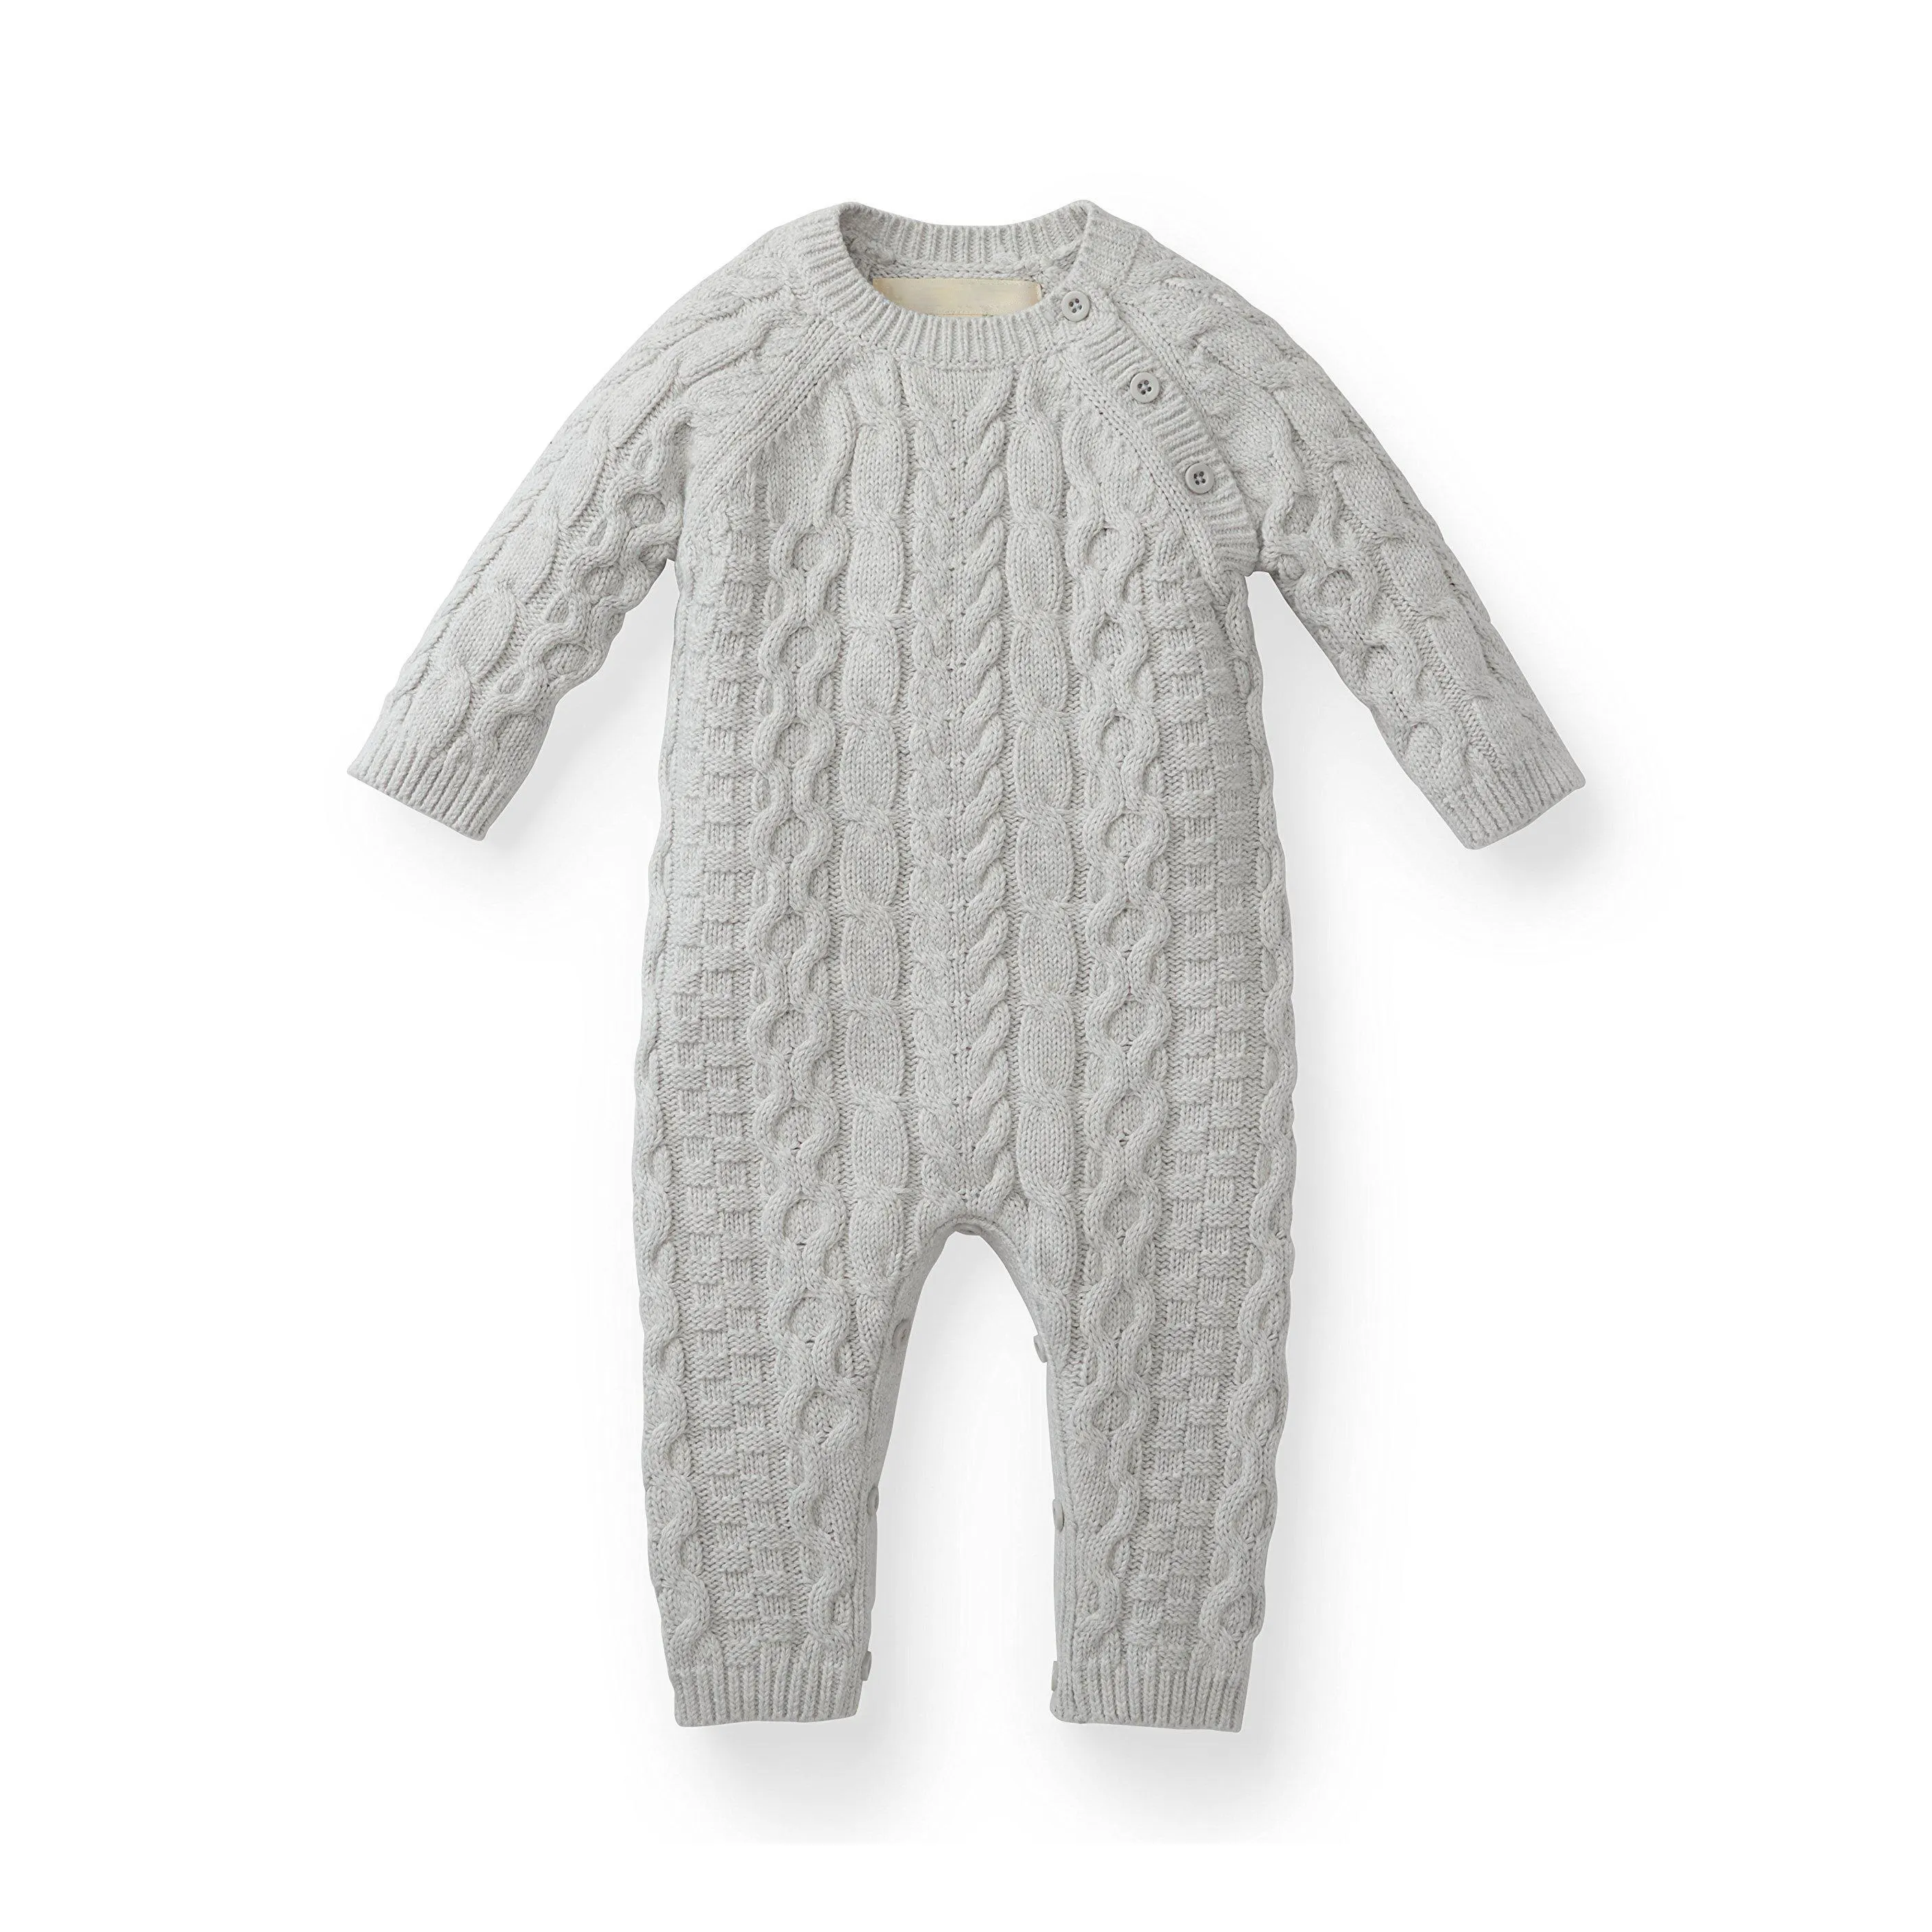 Macacão infantil de malha, roupa de malha manga longa para meninos e meninas, macacão para bebês, roupa para recém-nascidos